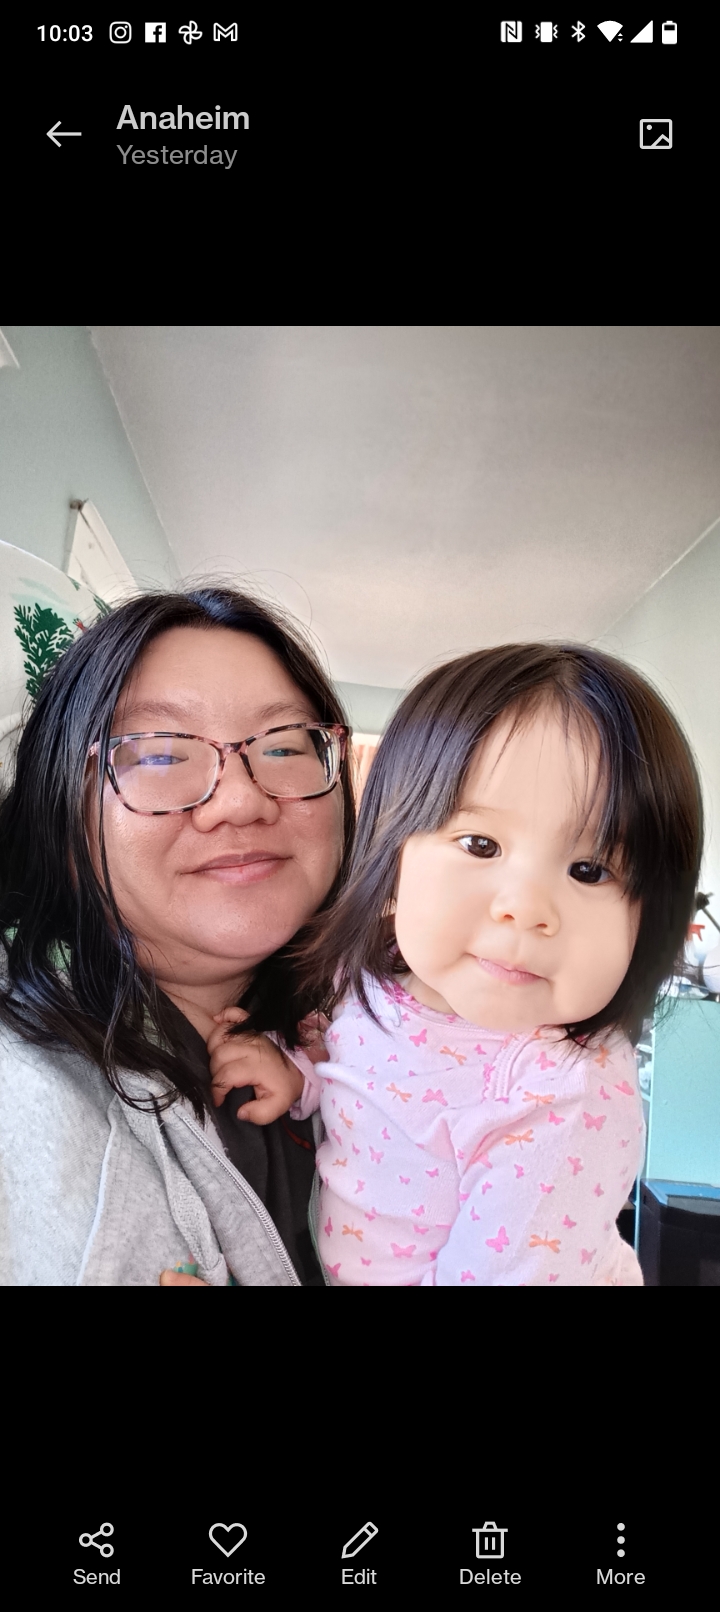 Versión sin editar de una selfie de Christine y su hija